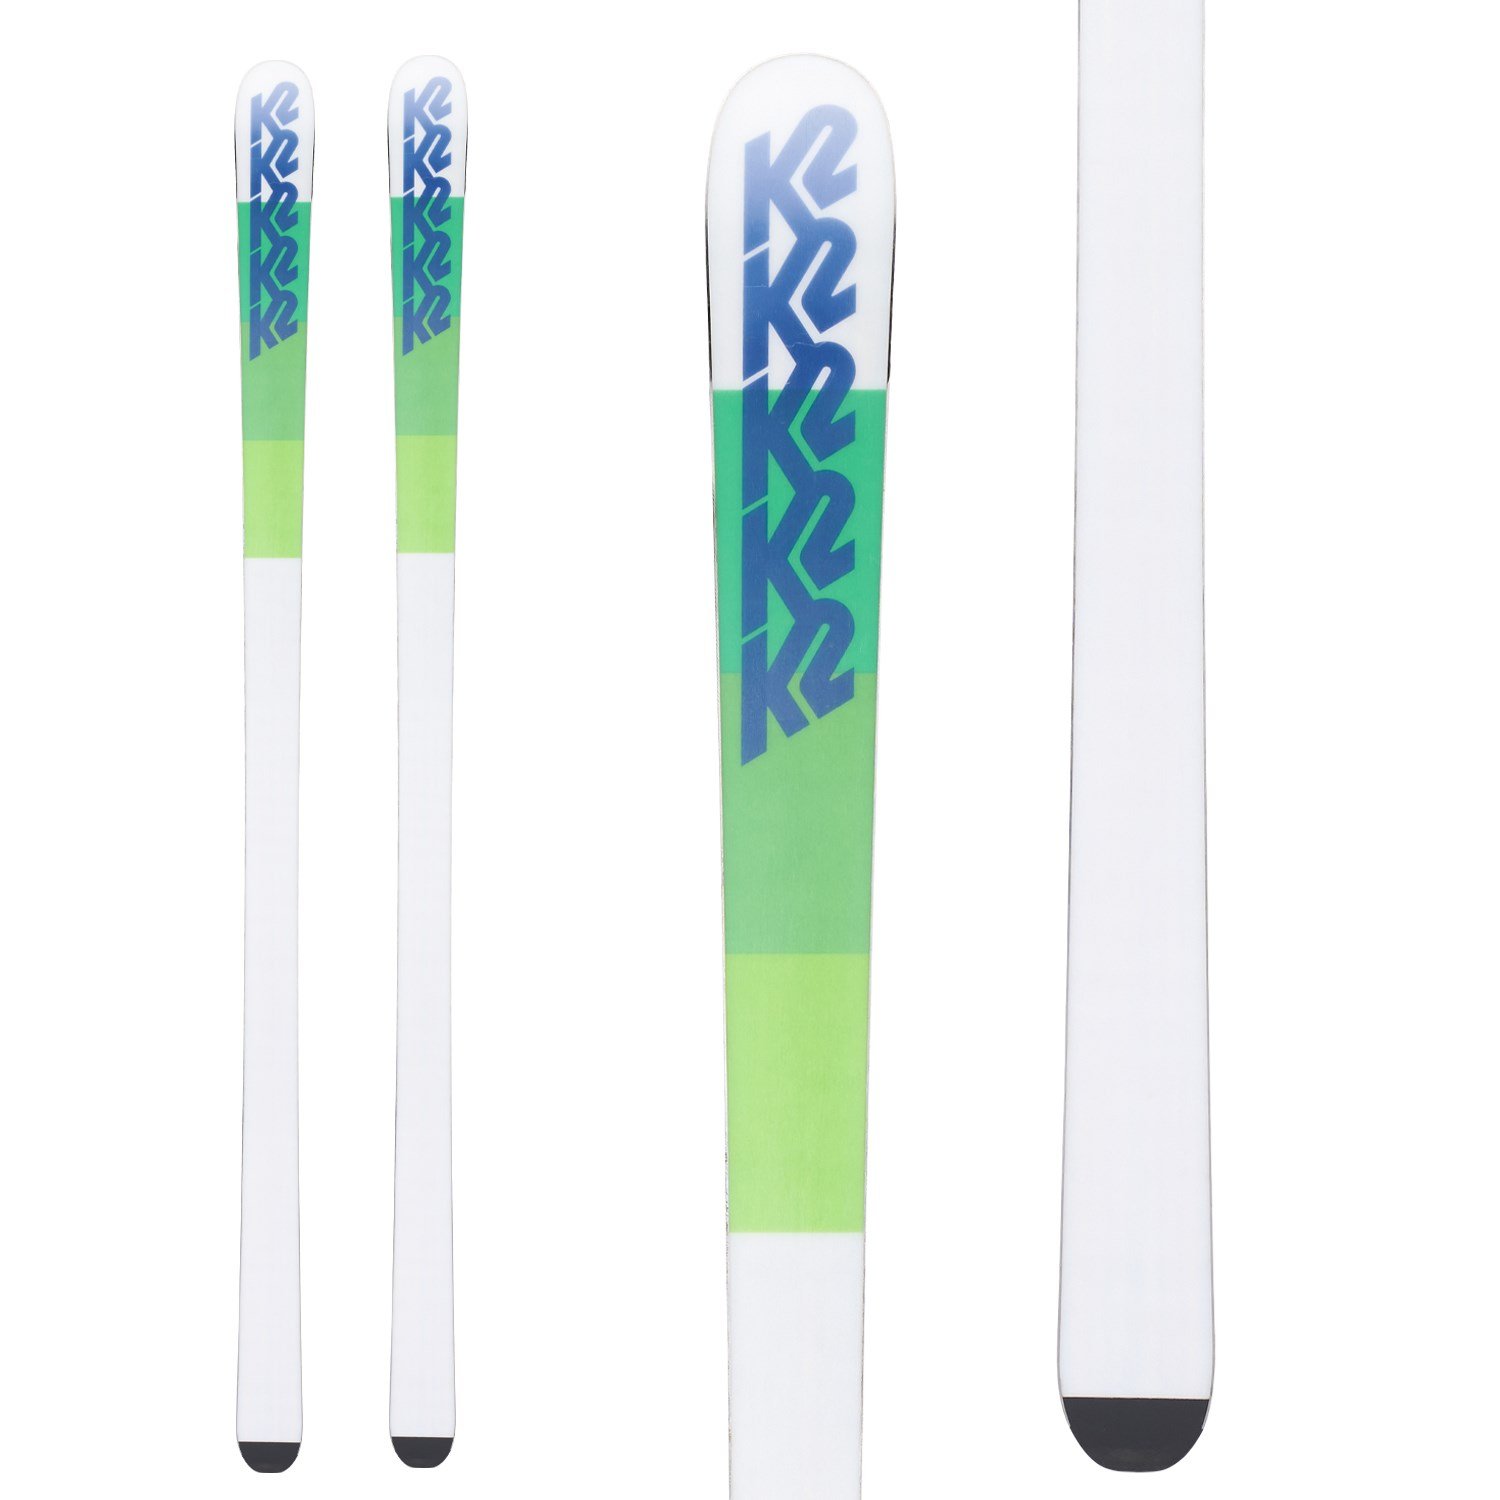 K2モーグル/コブ用スキー板u0026ビンディング付き - スキー